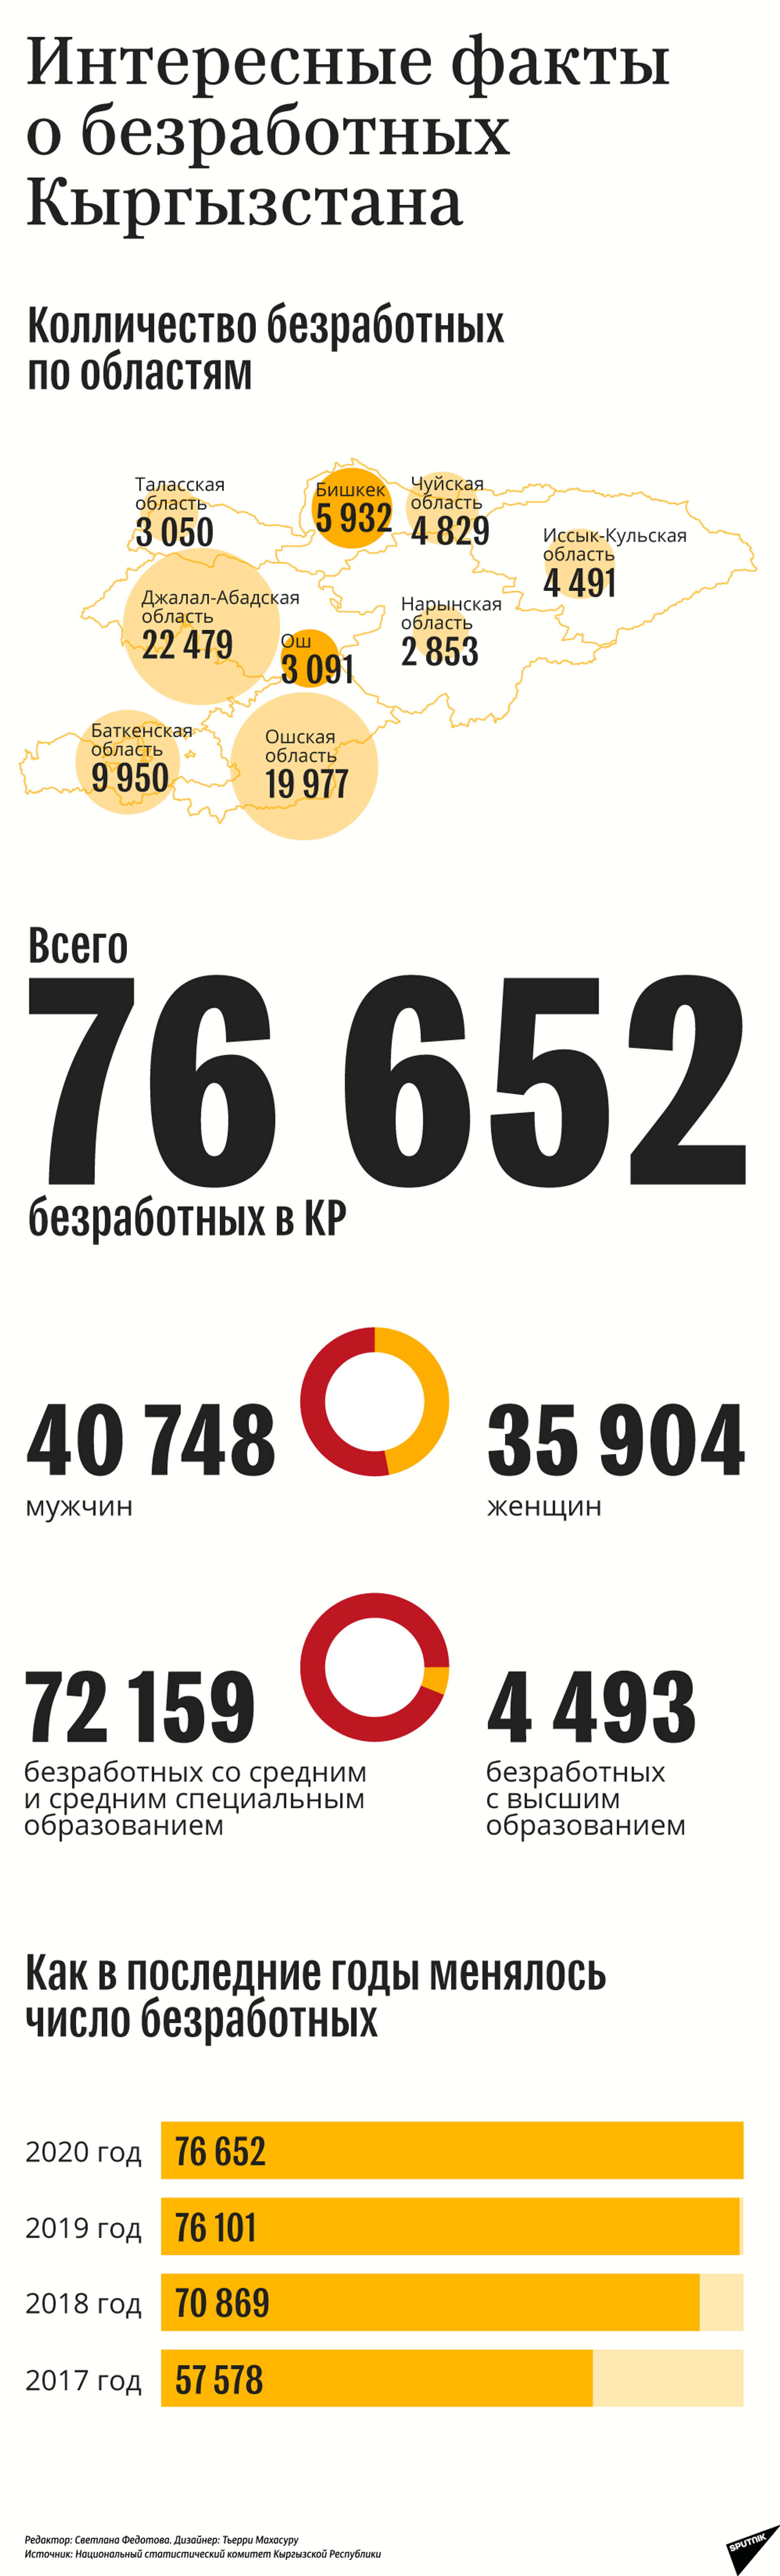 Интересные факты о безработных Кыргызстана - Sputnik Кыргызстан, 1920, 09.04.2021